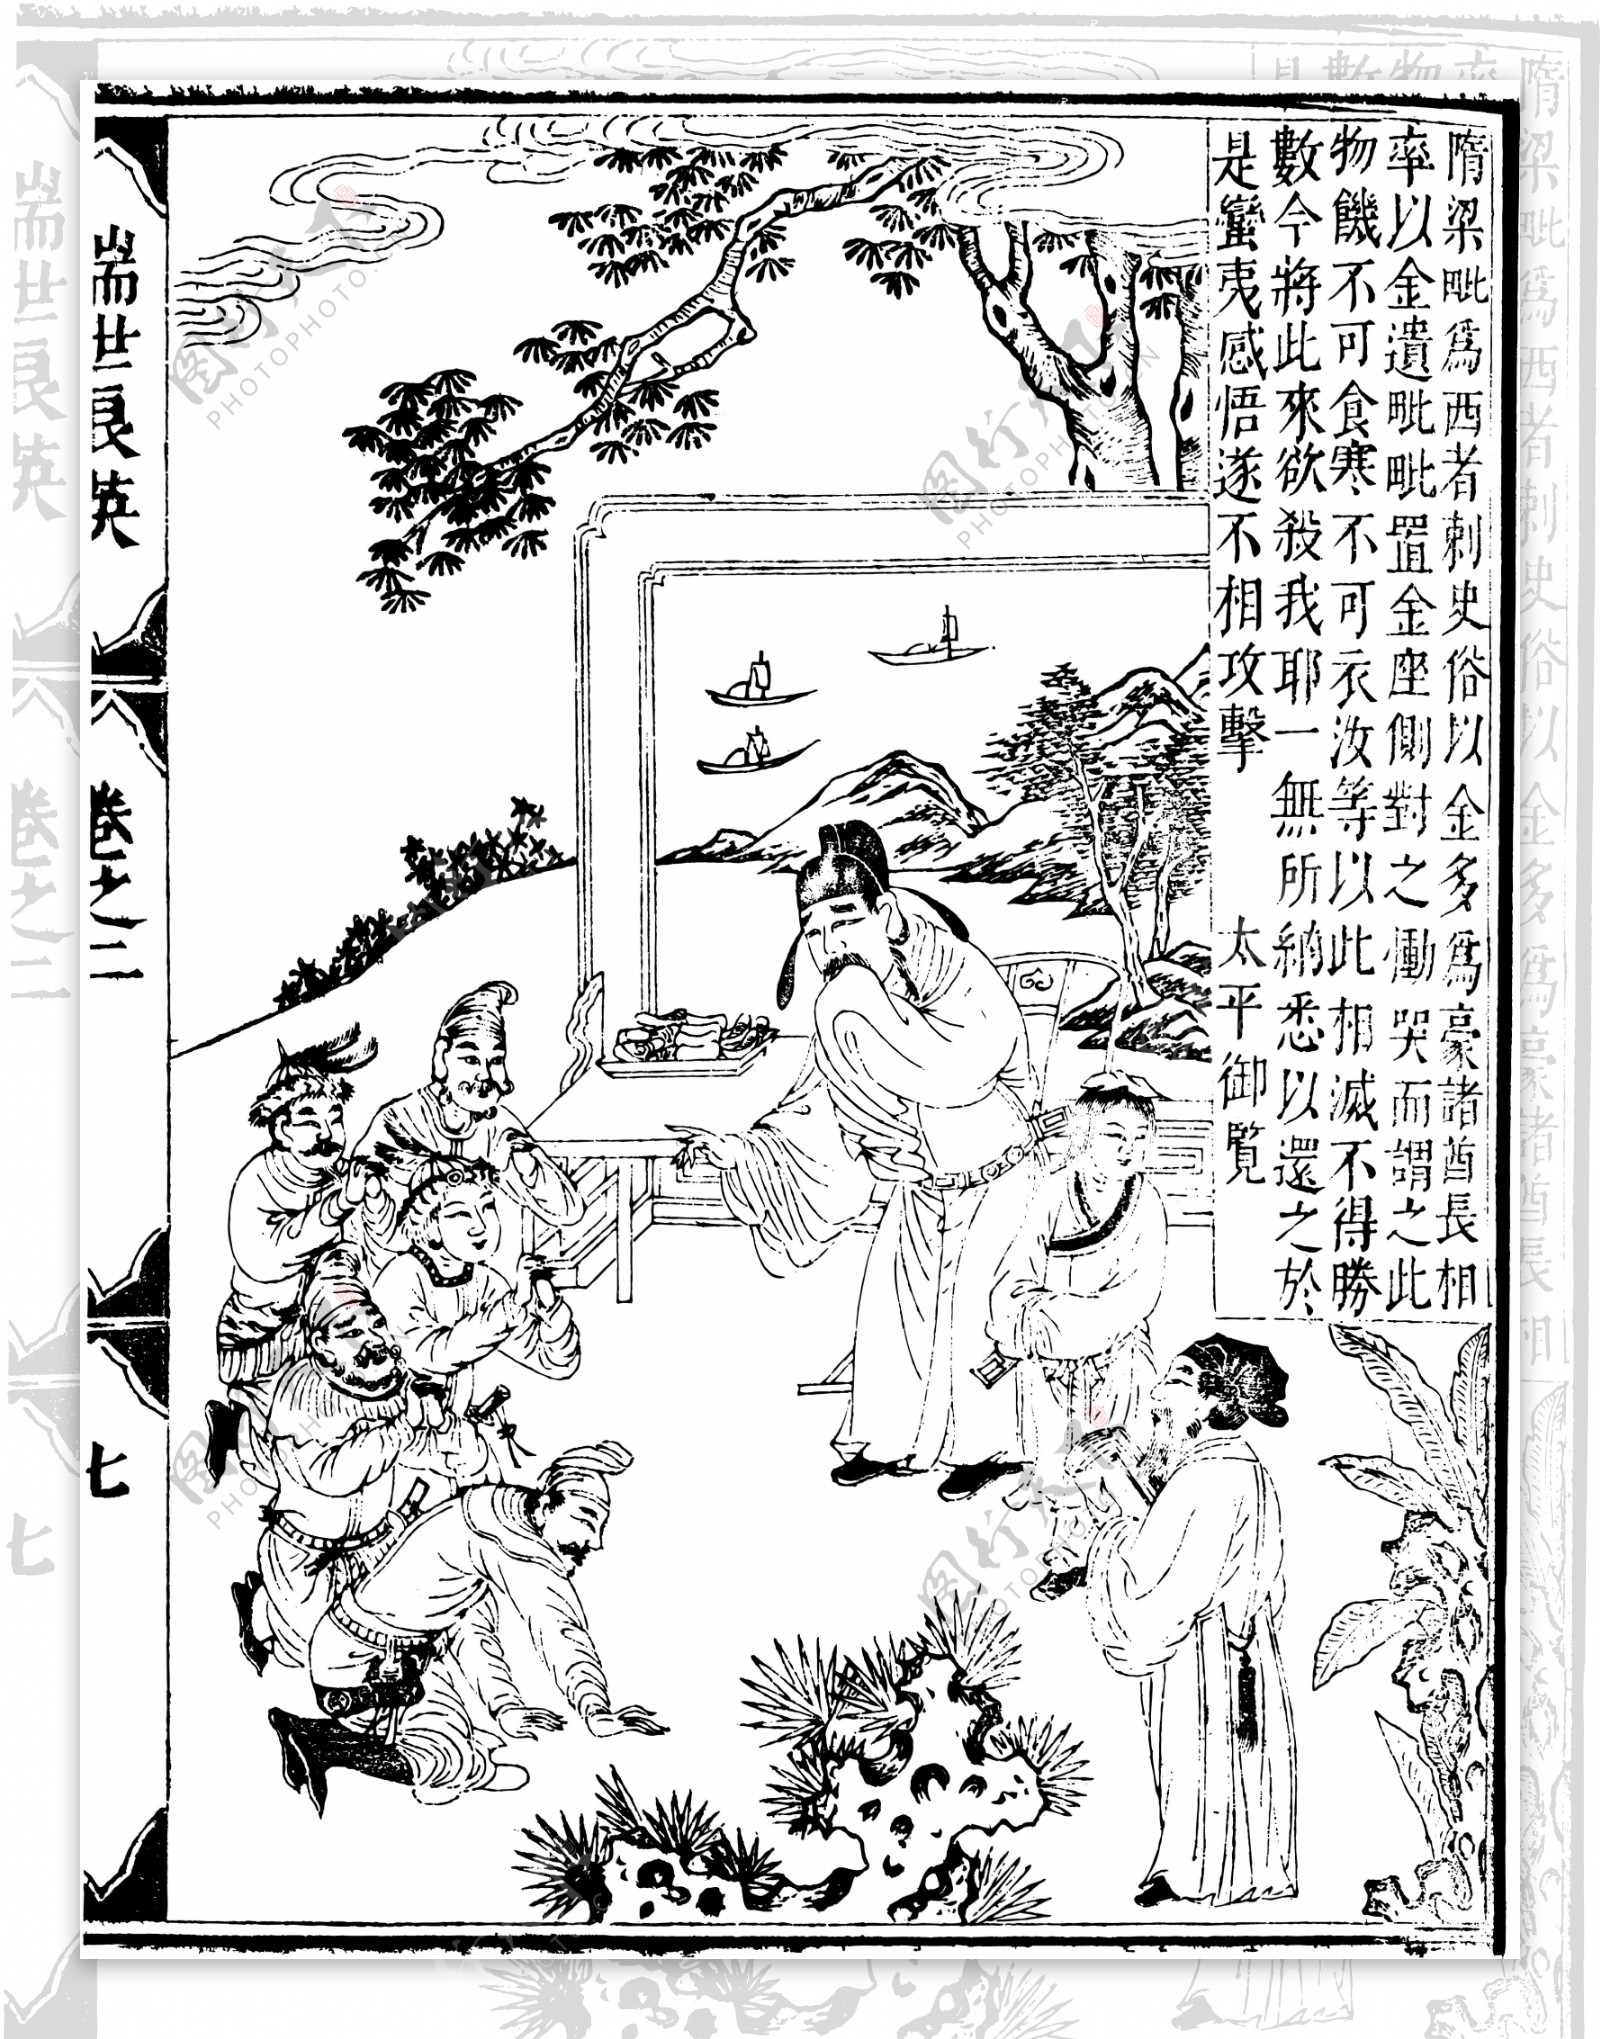 瑞世良英木刻版画中国传统文化81